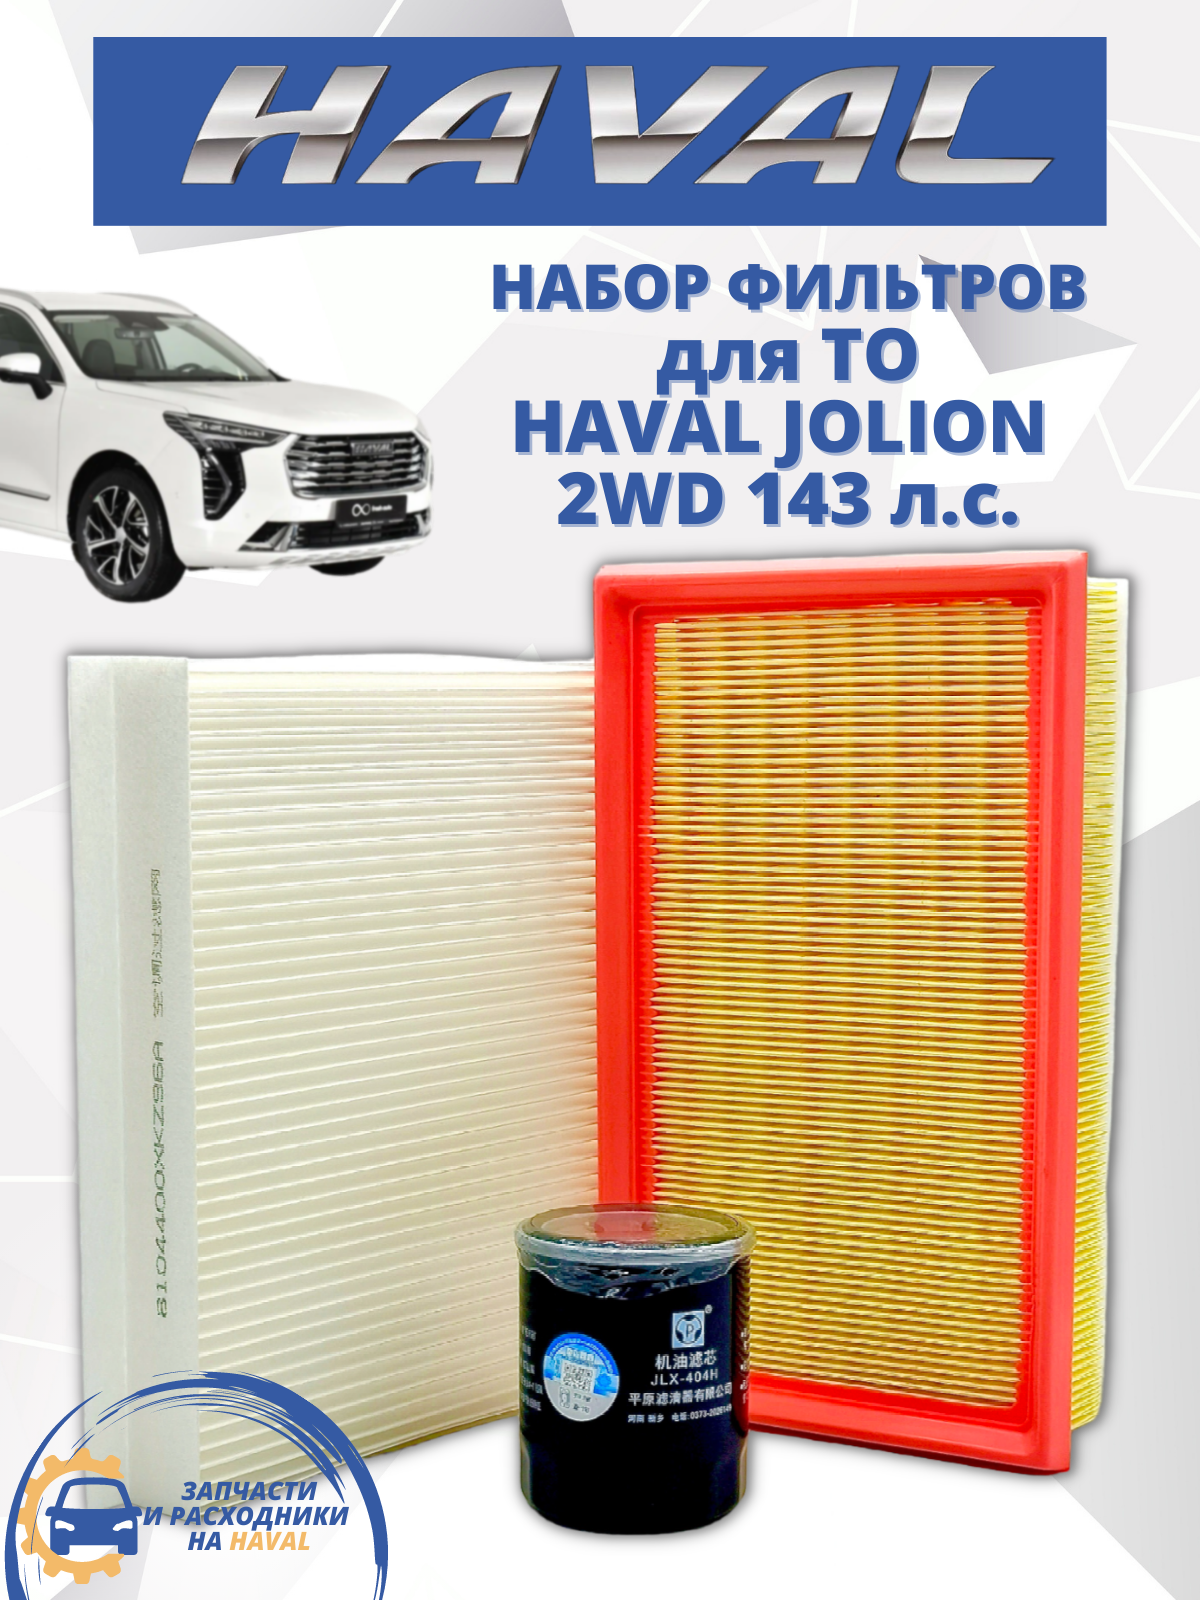 Комплект фильтров для ТО HAVAL Jolion 2WD Хавал Джолион, 143 л. с.